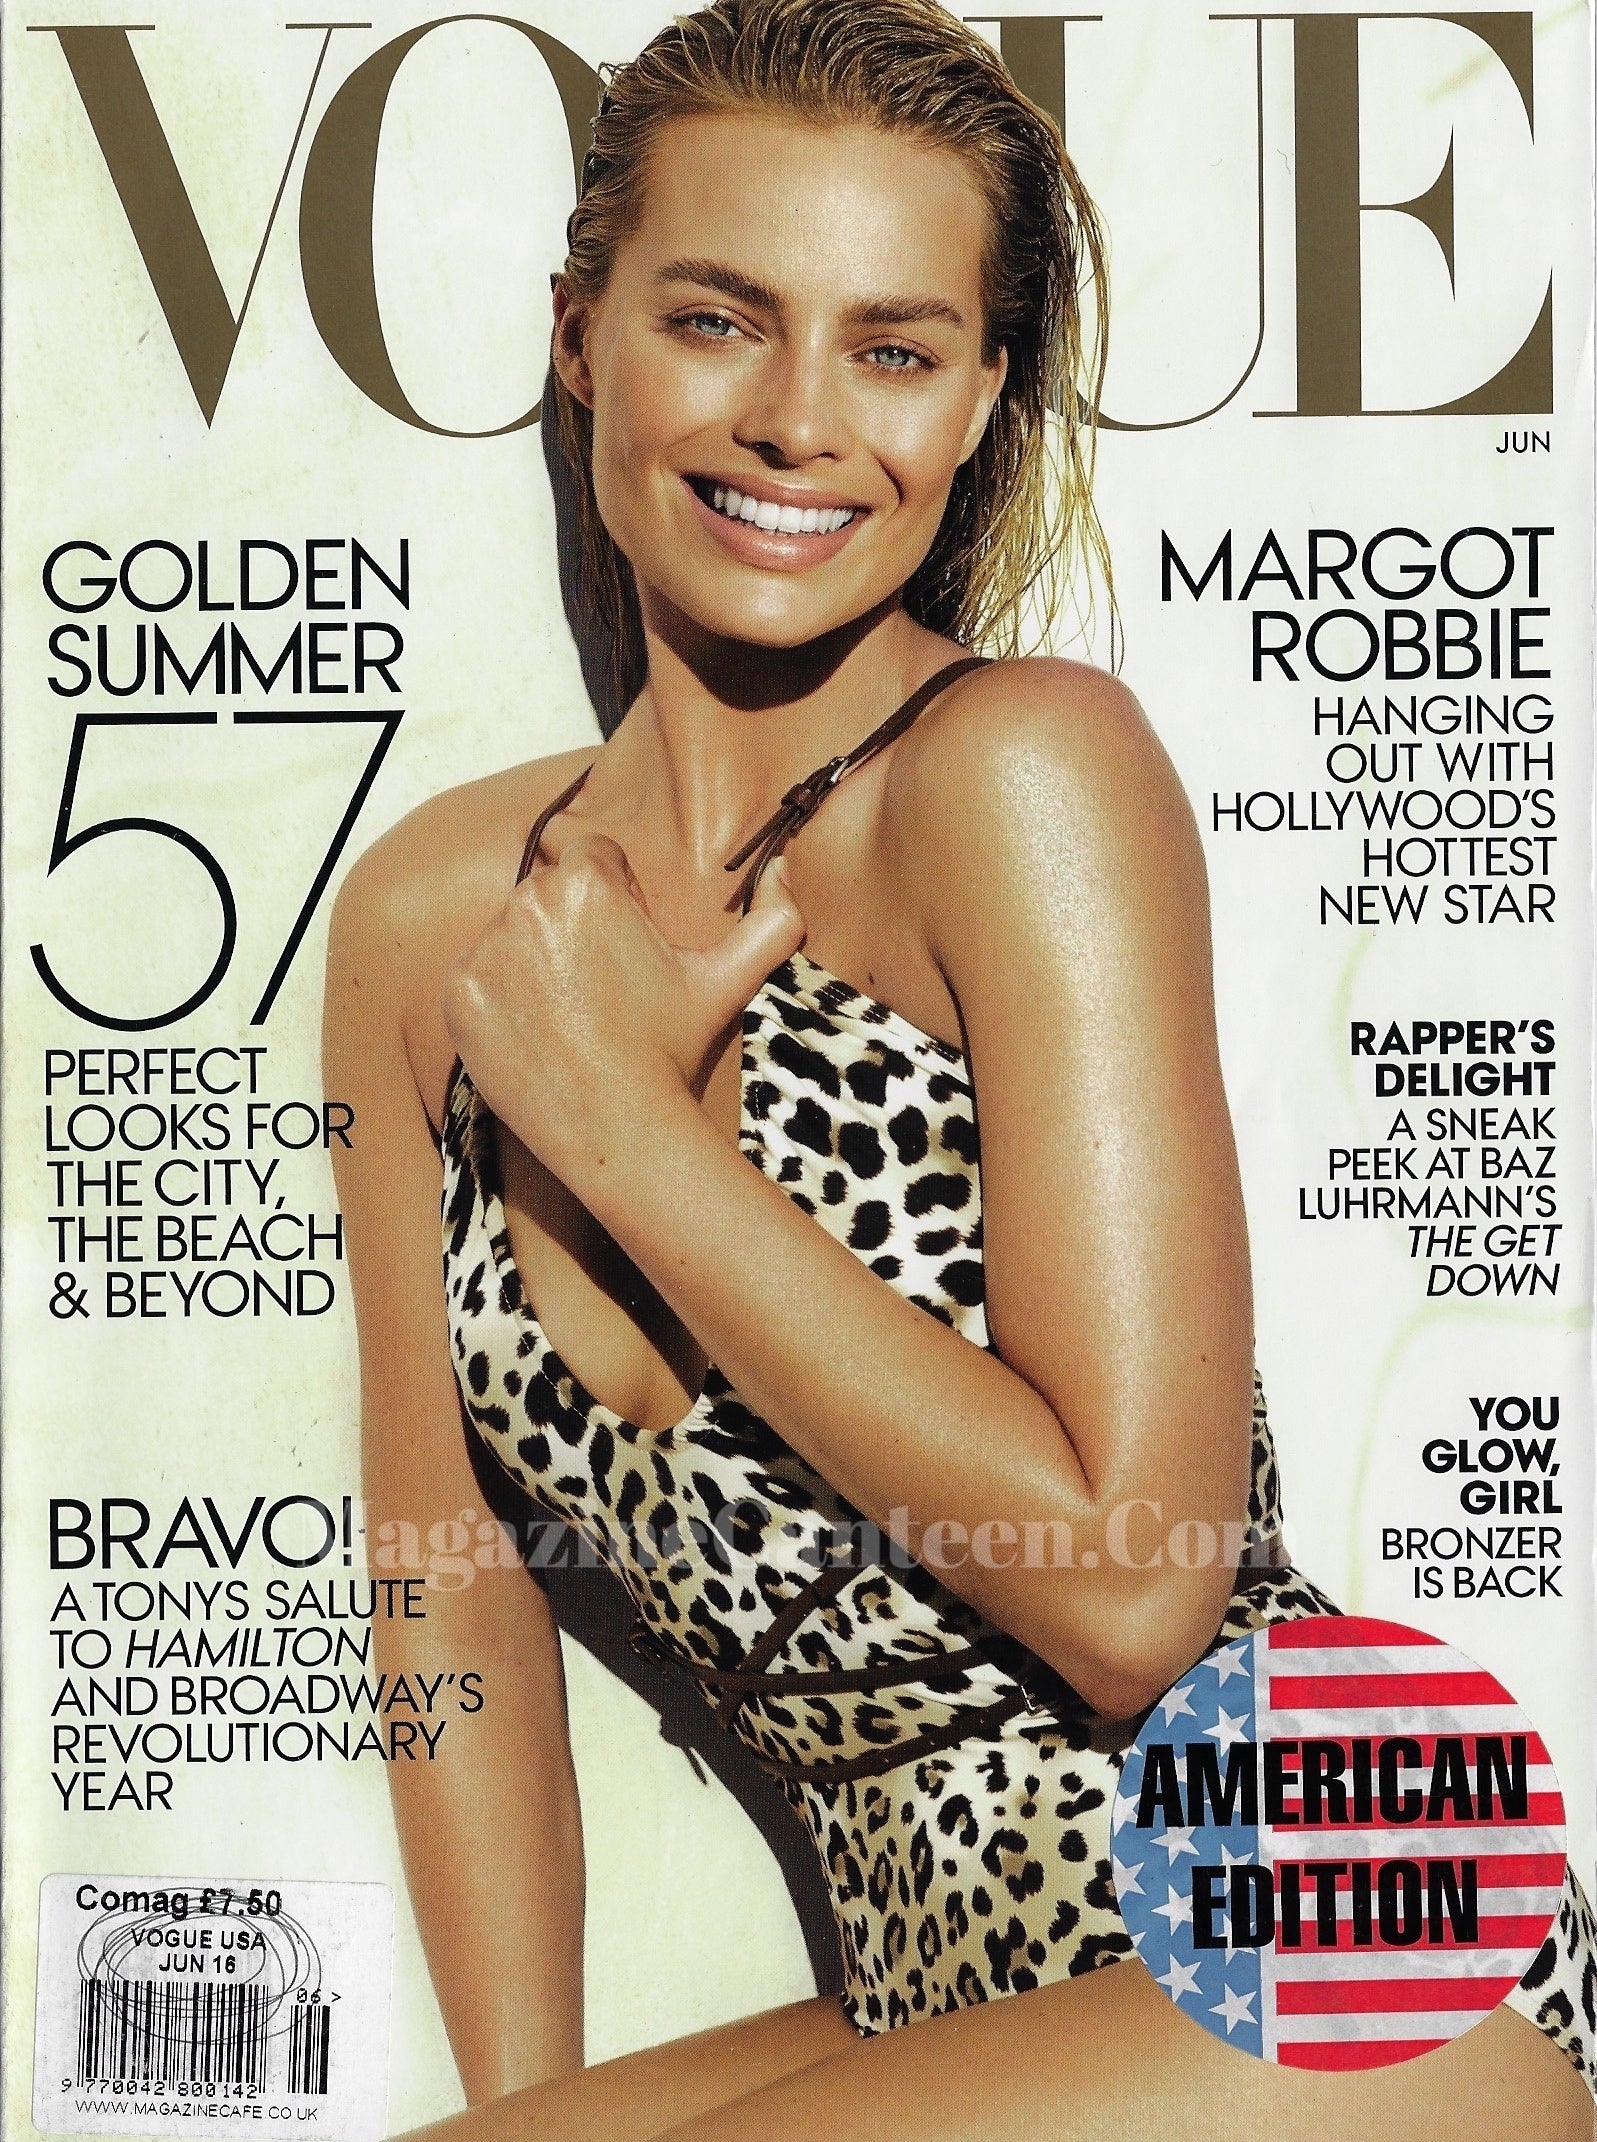 Vogue USA Magazine June 2016 - Margot Robbie